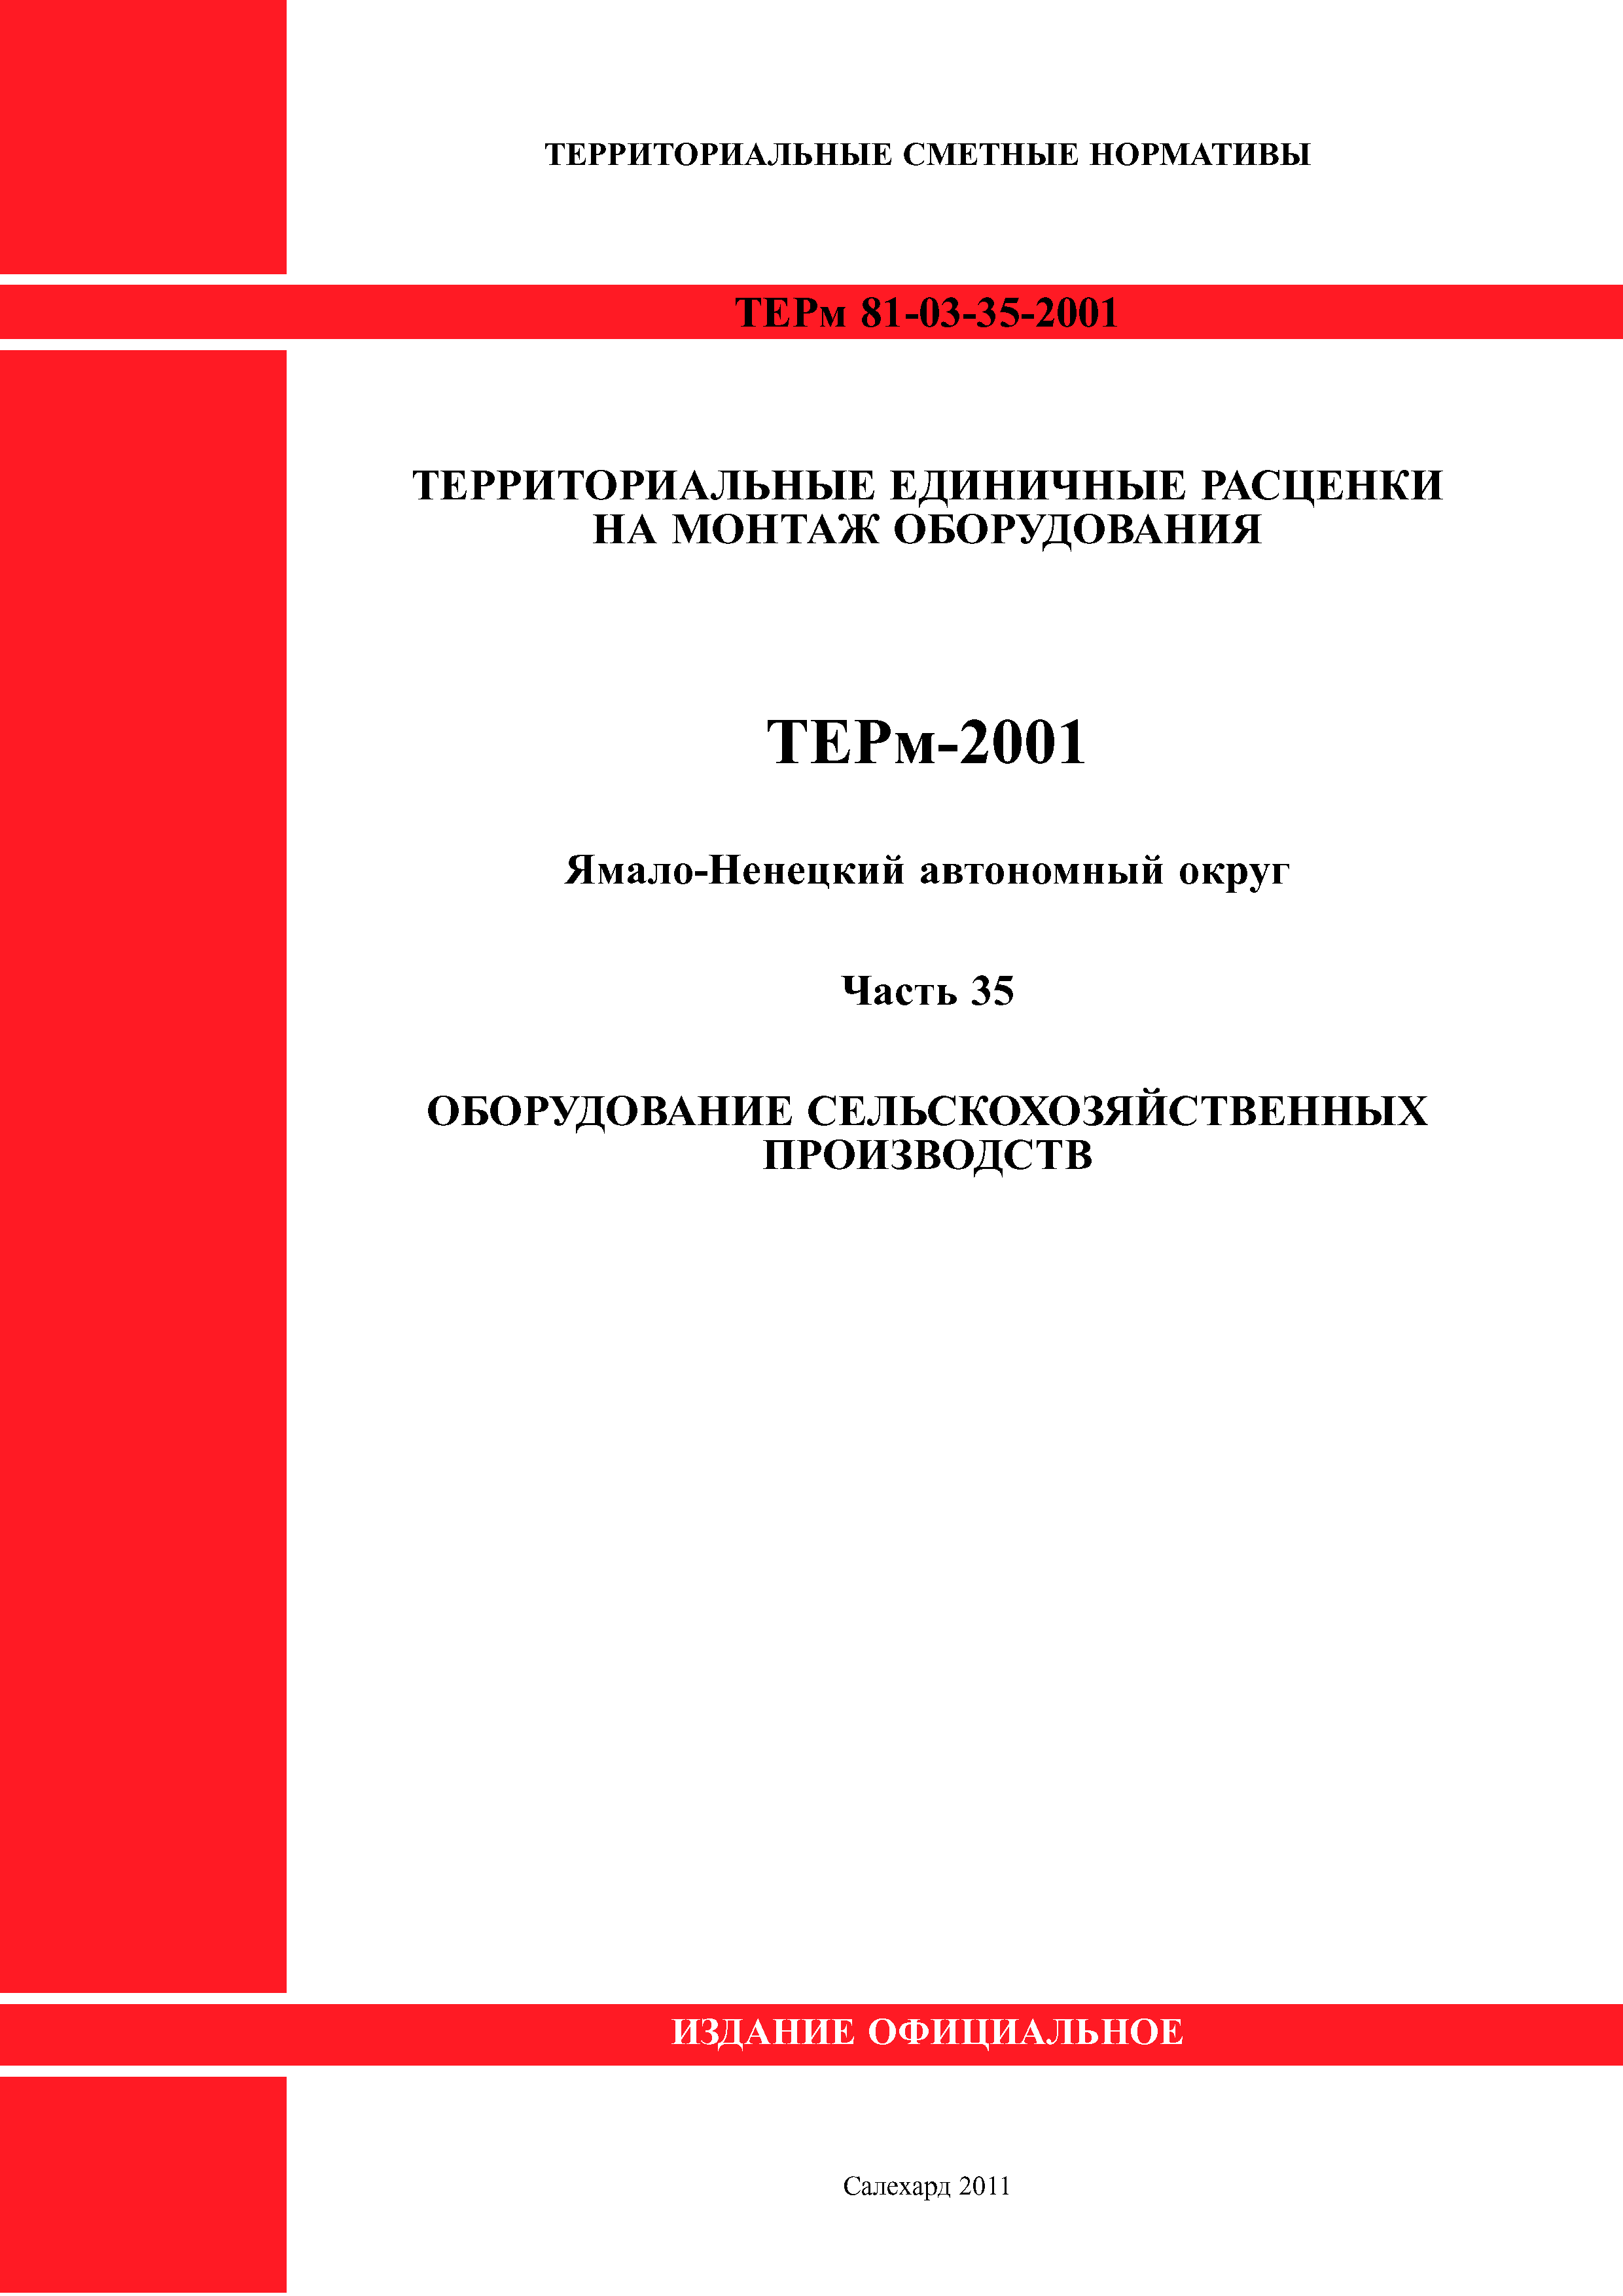 ТЕРм Ямало-Ненецкий автономный округ 35-2001